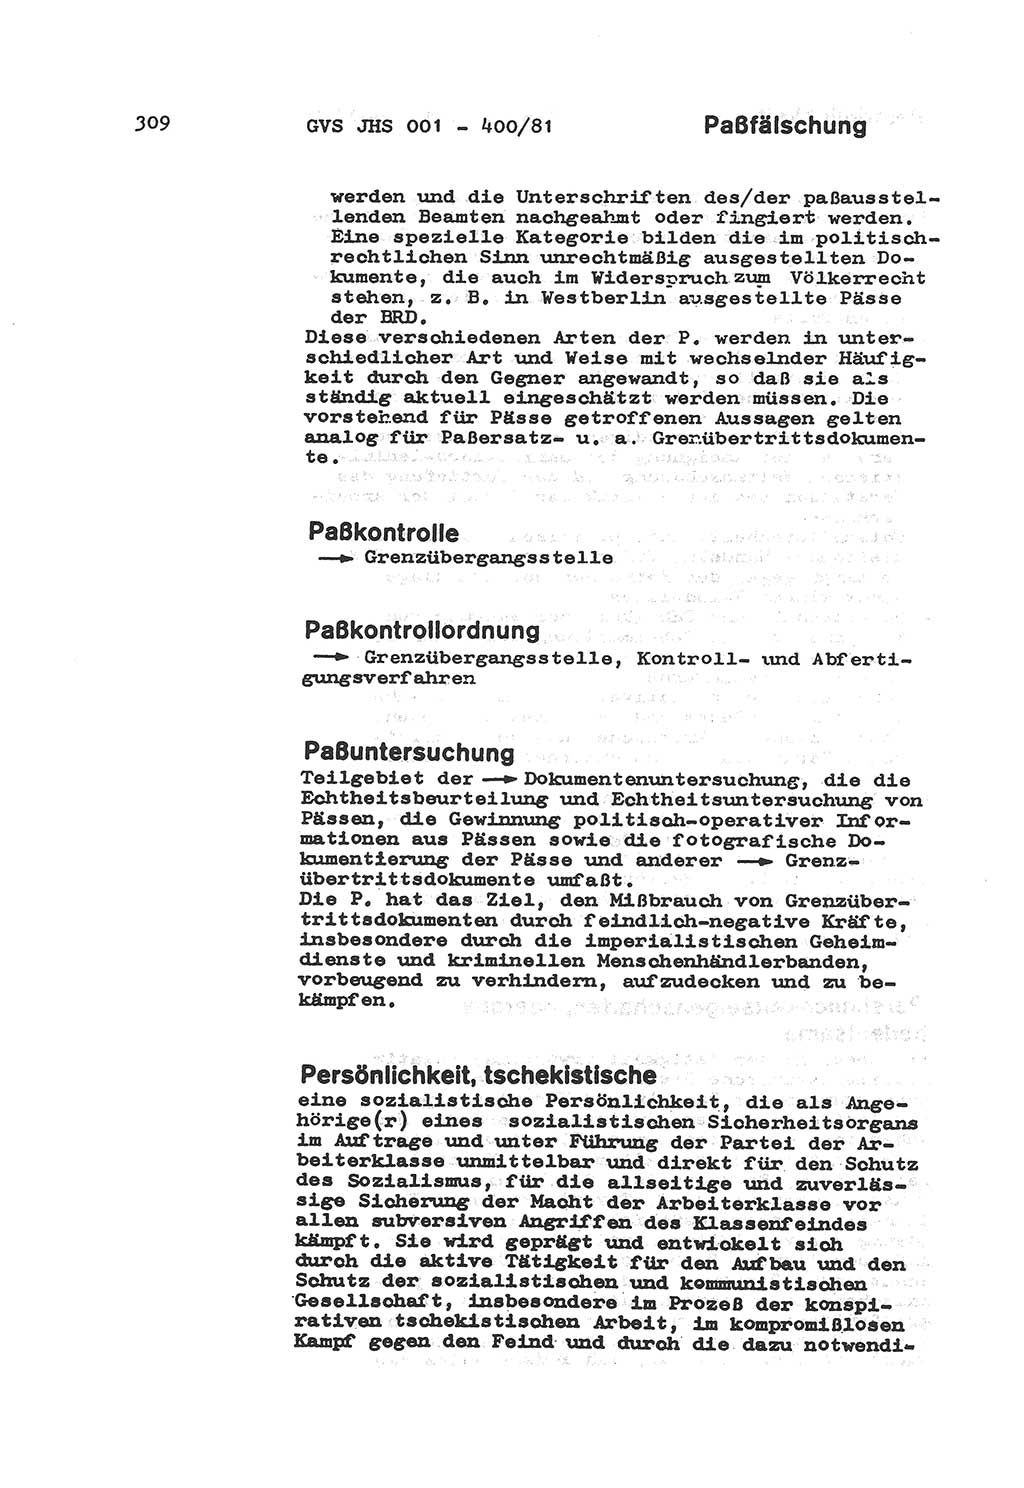 Wörterbuch der politisch-operativen Arbeit, Ministerium für Staatssicherheit (MfS) [Deutsche Demokratische Republik (DDR)], Juristische Hochschule (JHS), Geheime Verschlußsache (GVS) o001-400/81, Potsdam 1985, Blatt 309 (Wb. pol.-op. Arb. MfS DDR JHS GVS o001-400/81 1985, Bl. 309)